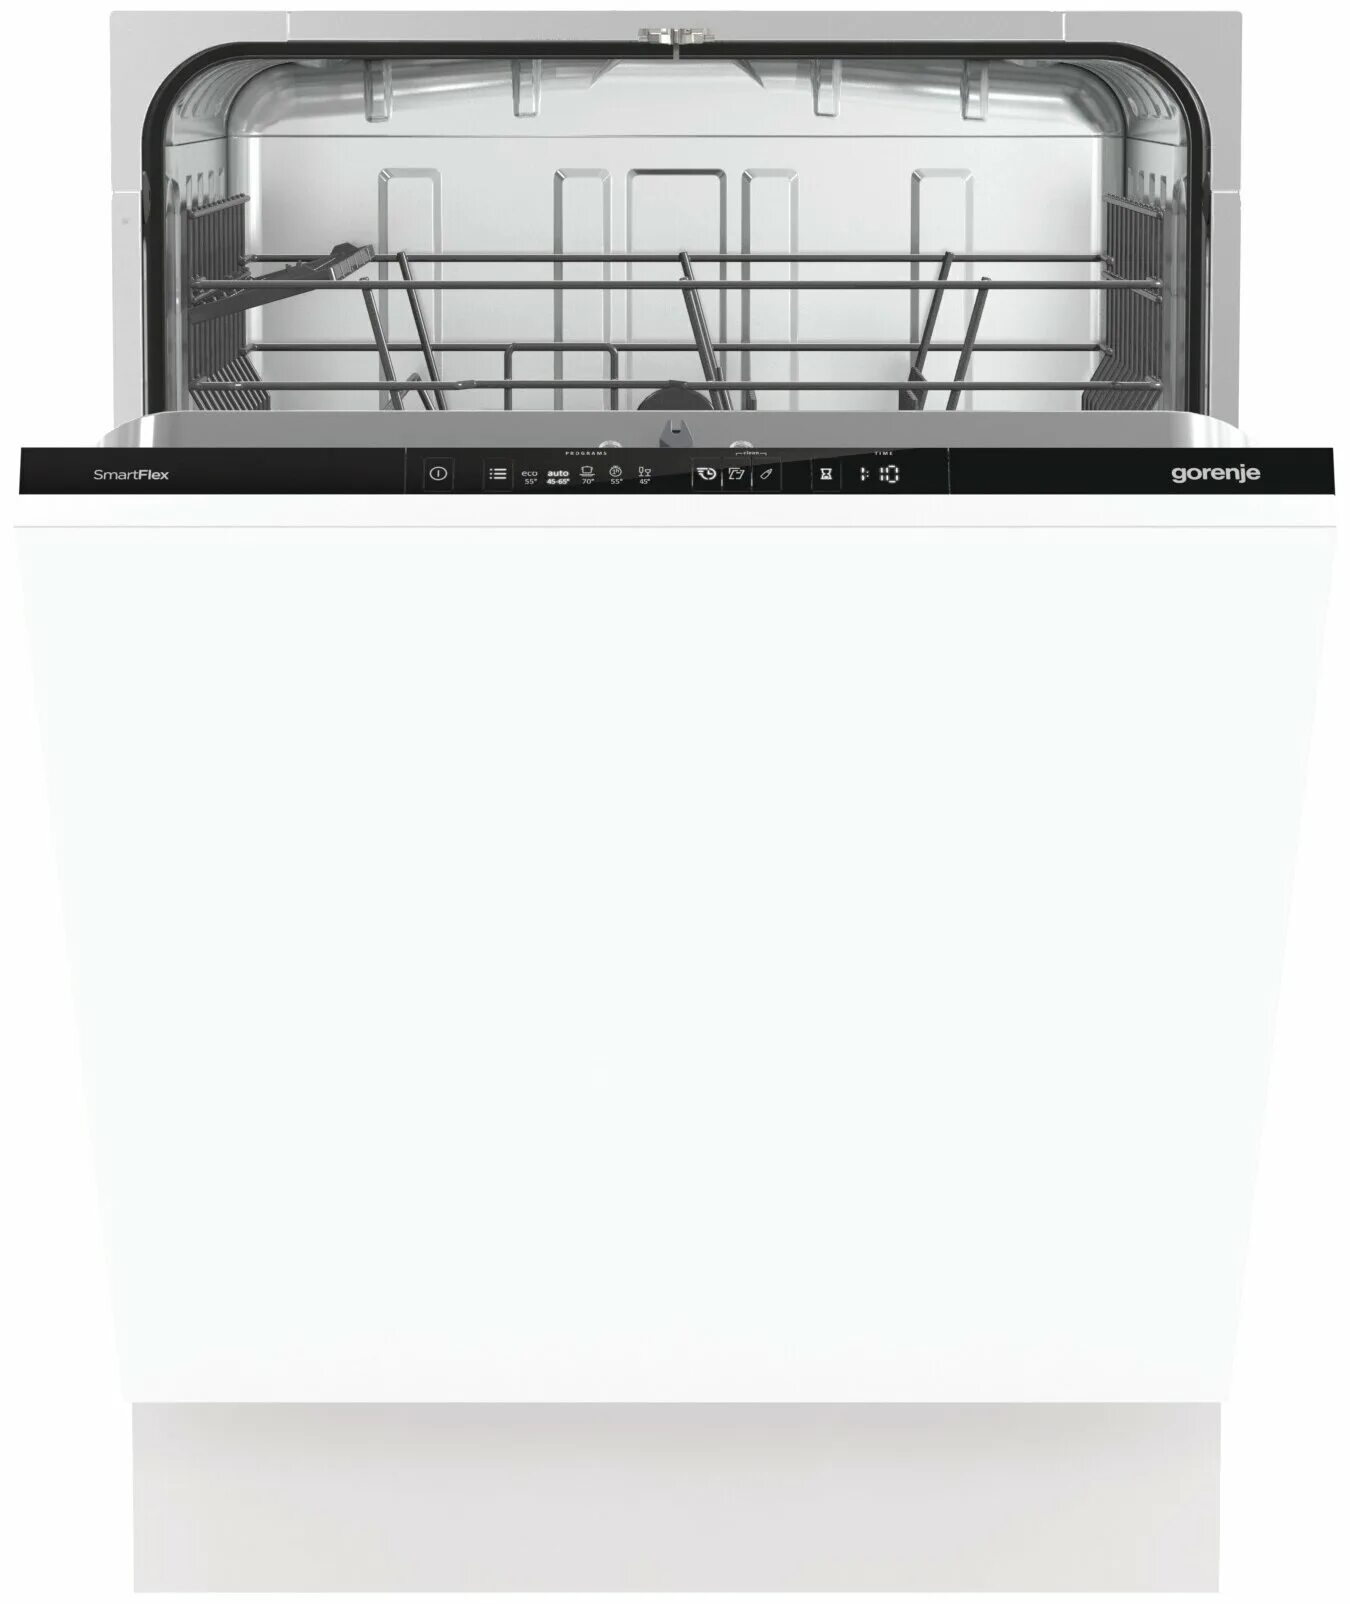 Посудомоечная машина Gorenje gv672c62. Встраиваемая посудомоечная машина 60 см Gorenje gv661d60. Машина посудомоечная Gorenje GV 661d60. Gorenje gv620e10. Посудомоечная машина горение купить